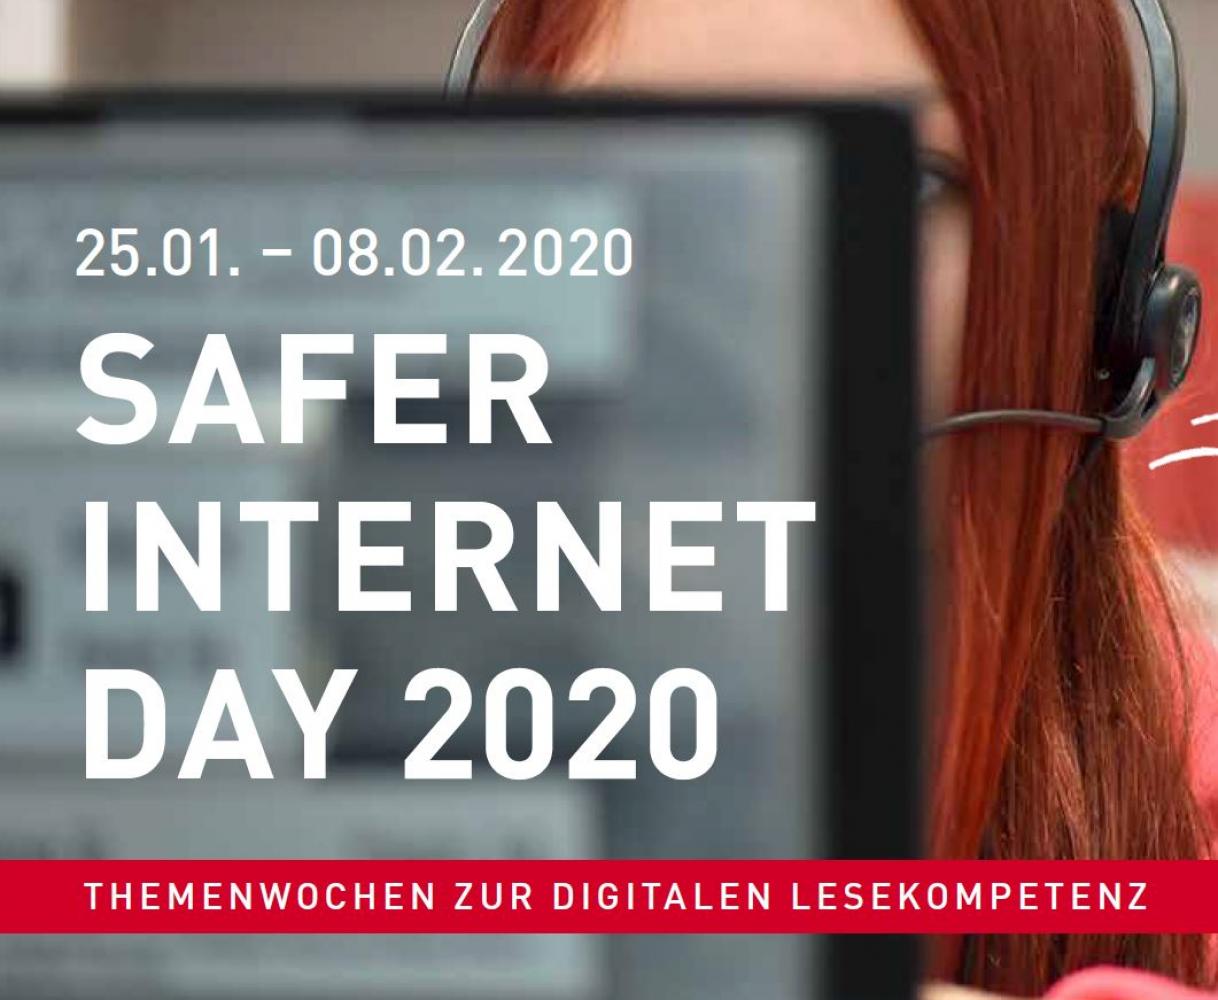 Bild zur Veranstaltung - Safer Internet Day